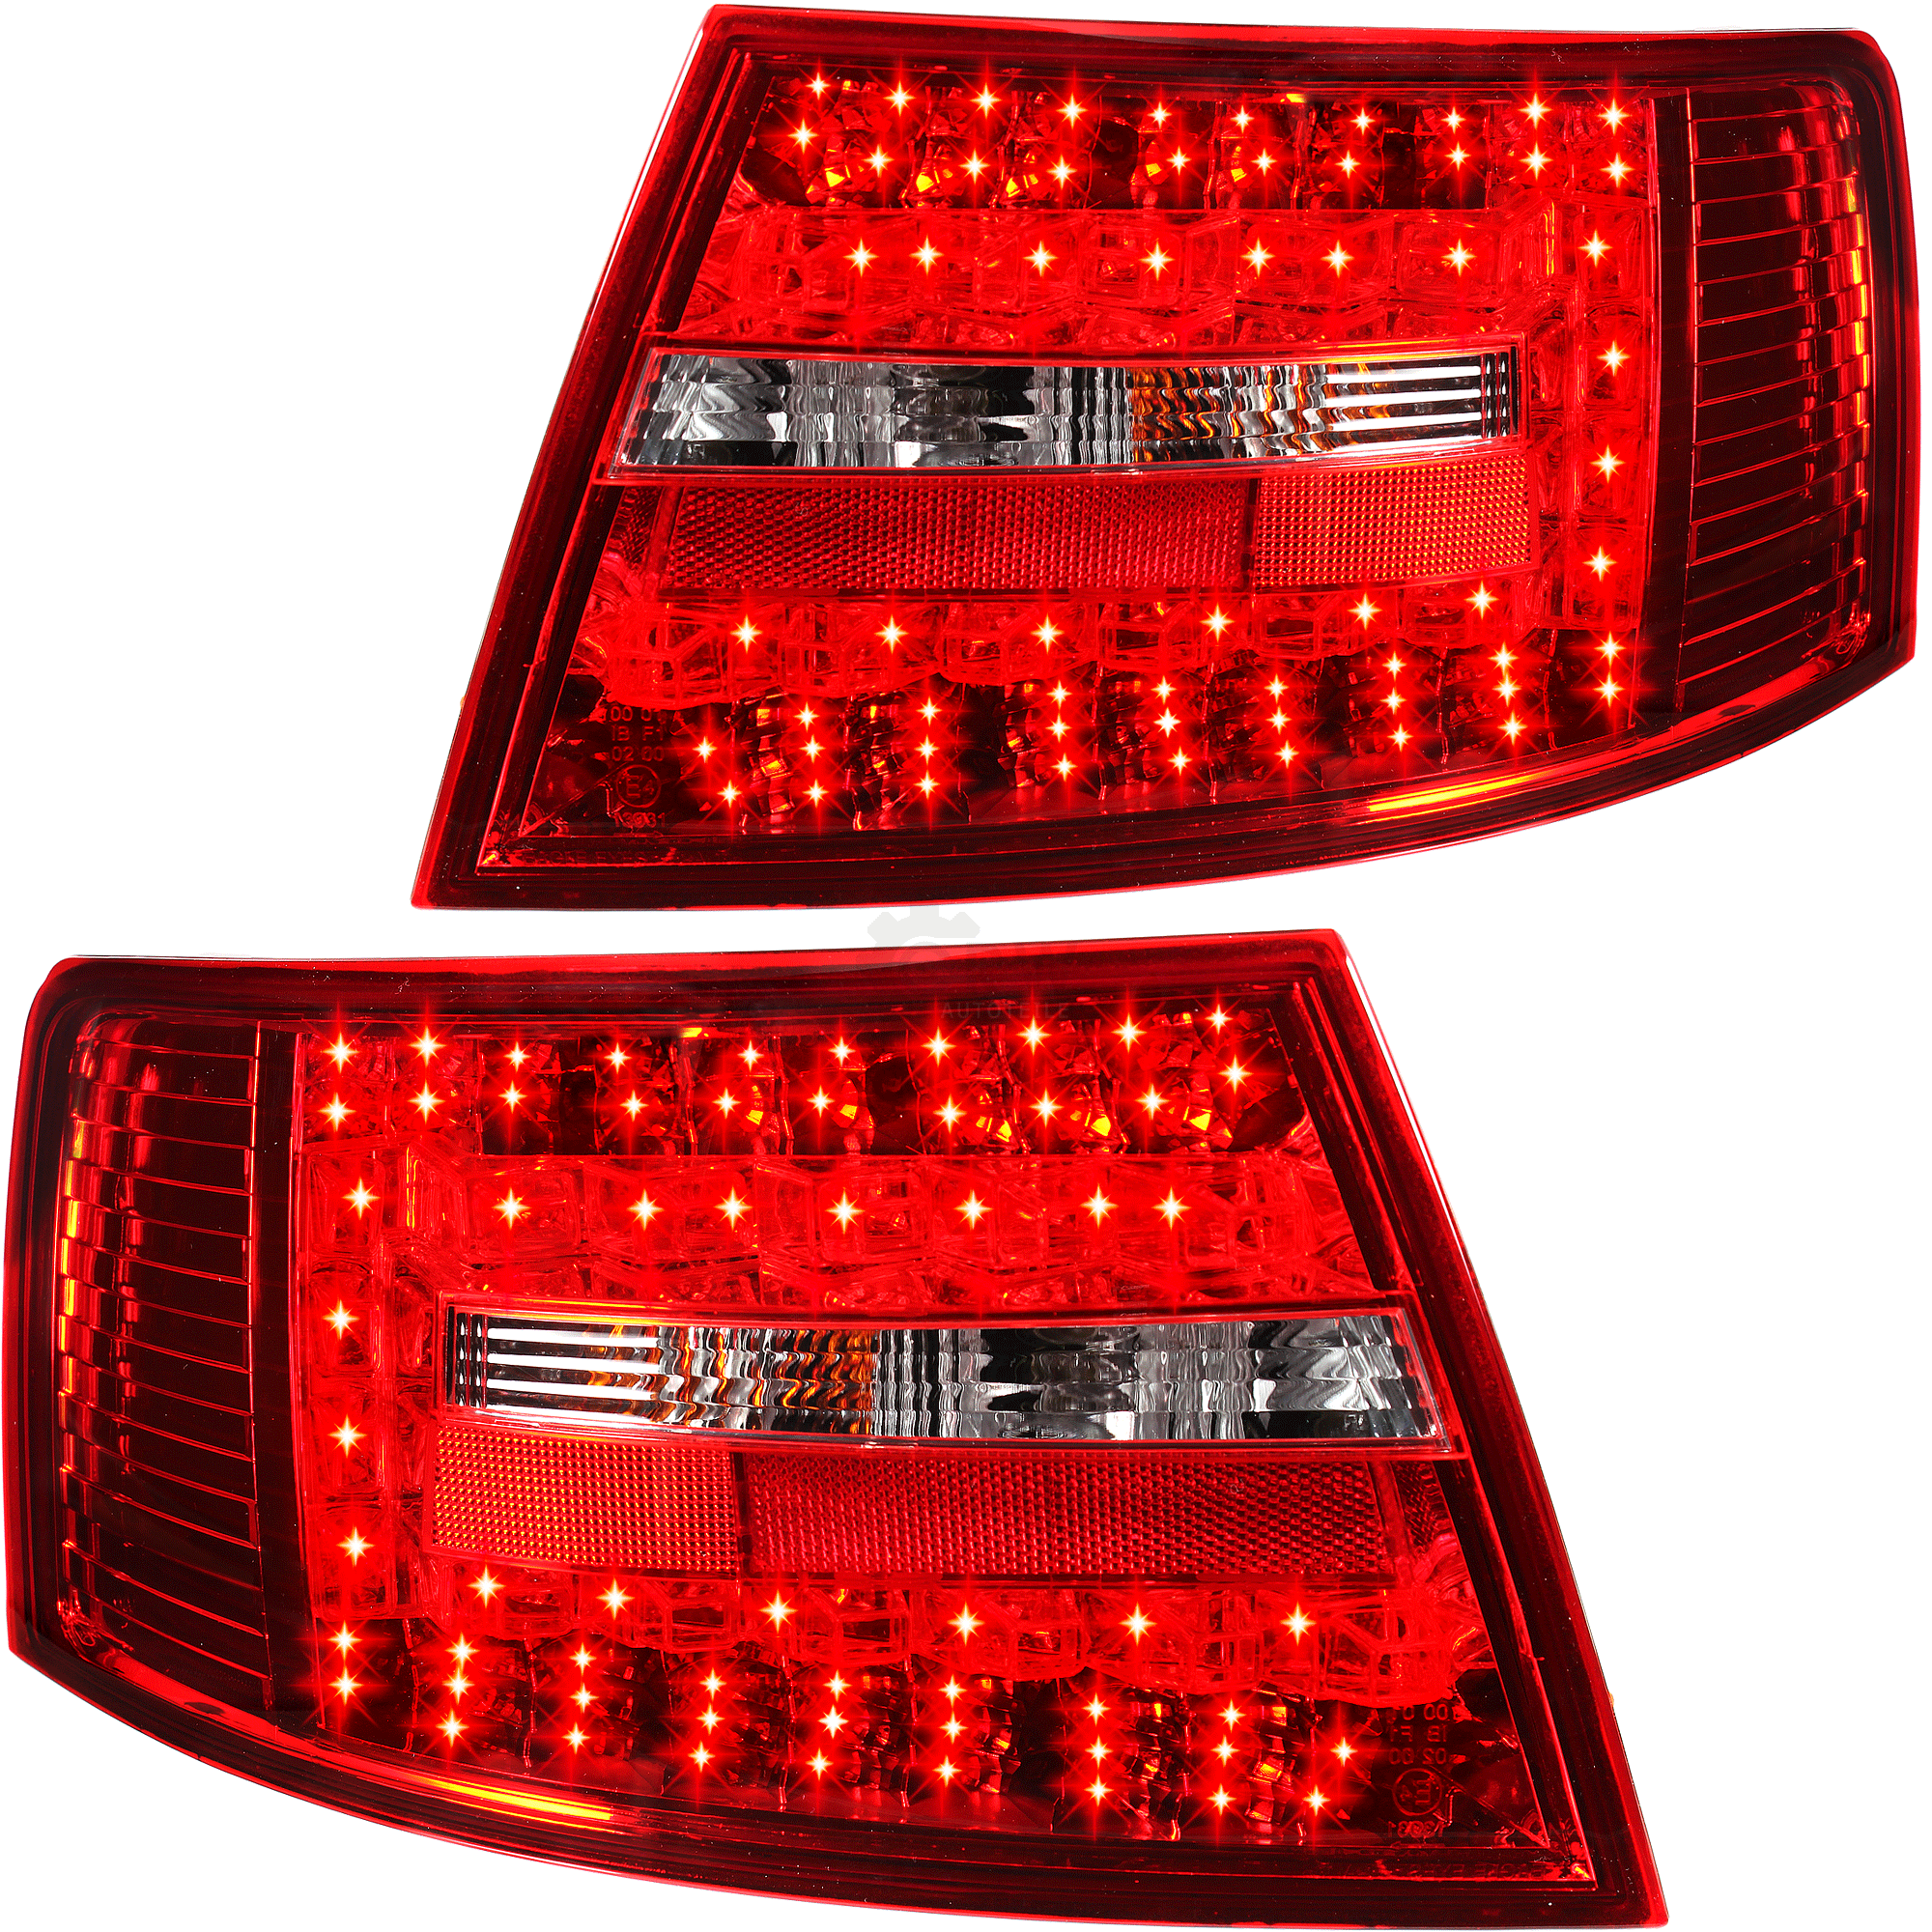 Rückleuchten Set Satz LED für Audi A6 4F Limousine Bj.04-08 rot chrom weiß 6 Pin